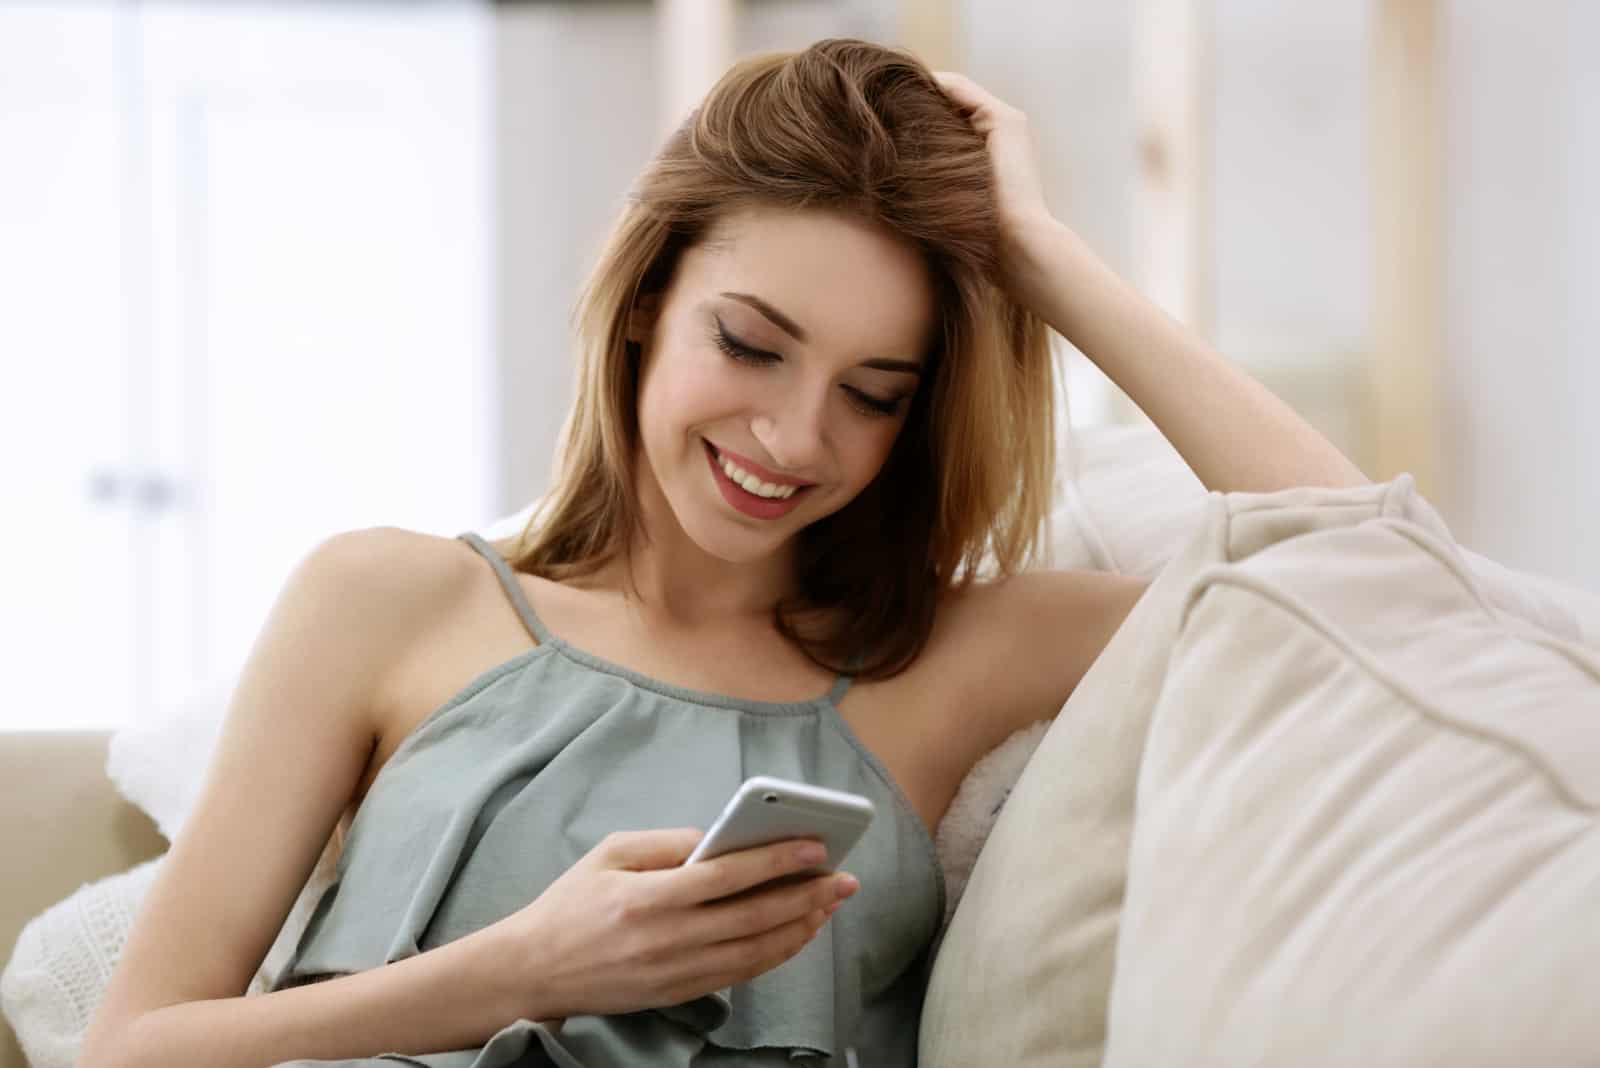 una donna sorridente che tiene in mano un telefono cellulare